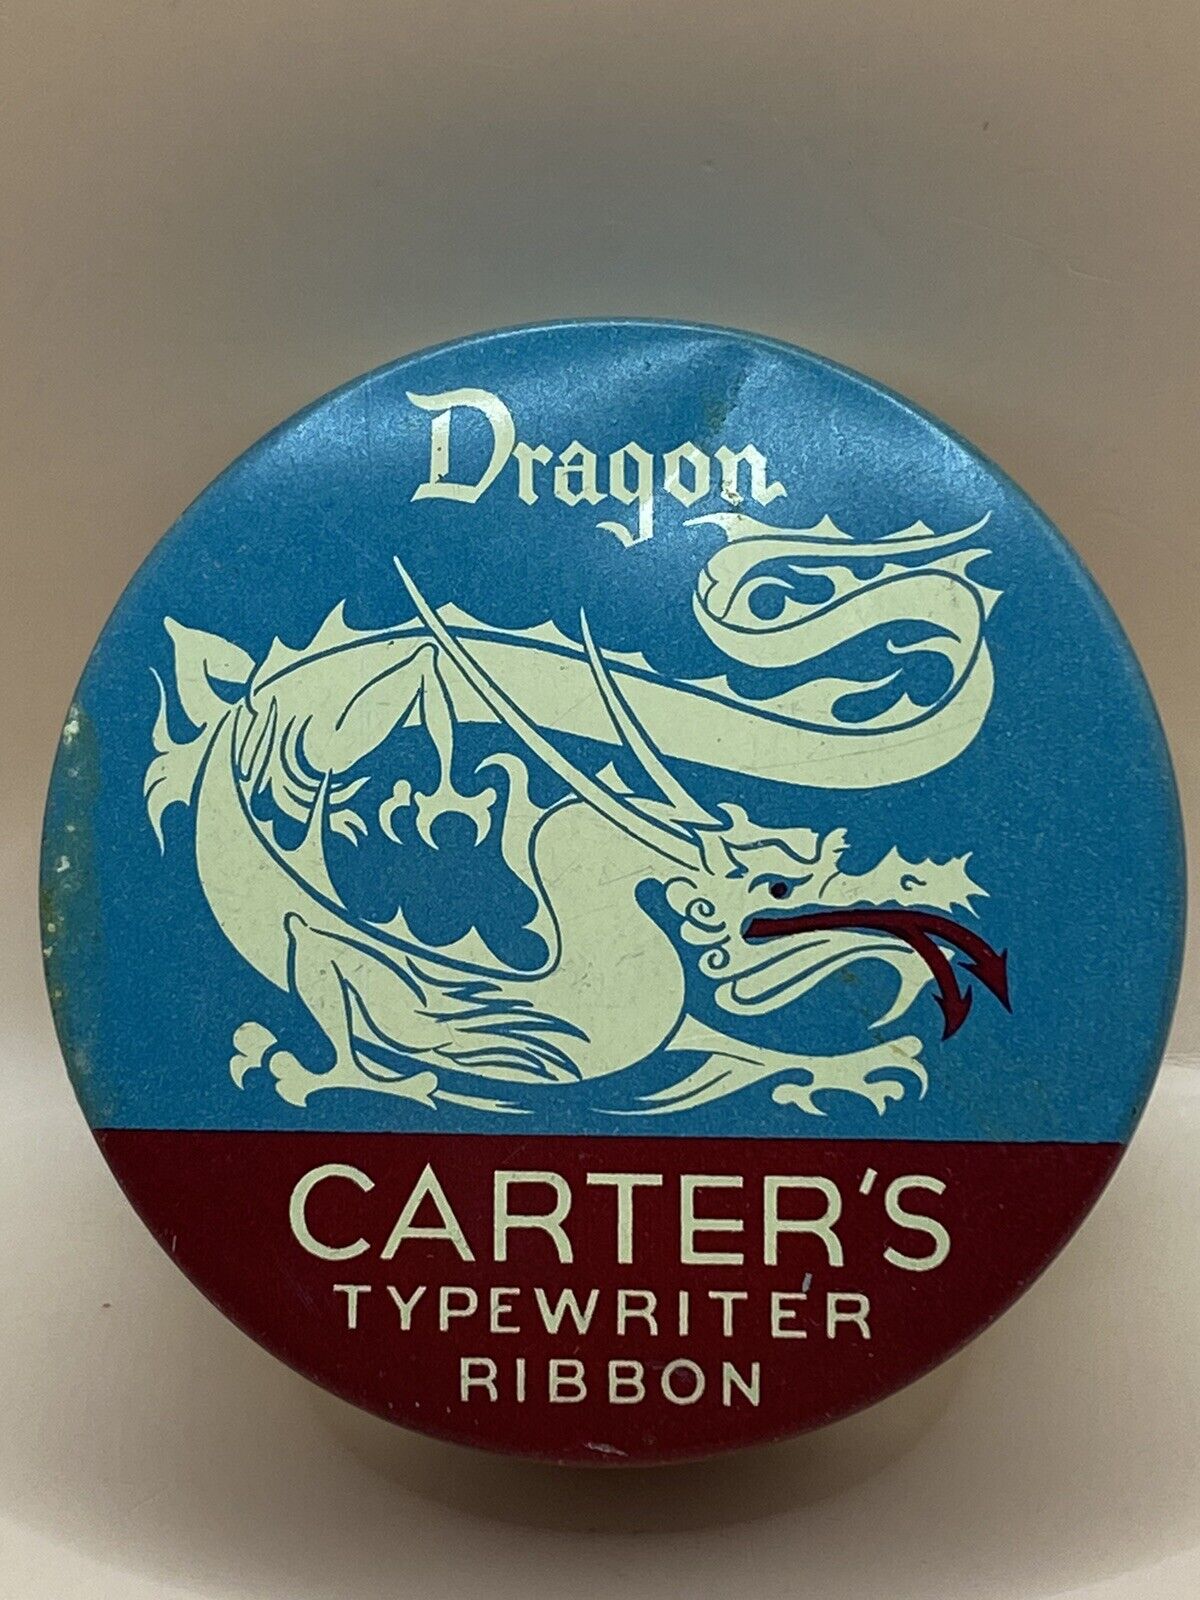 Vintage Dragon Carters typewriter ribbon tin Vintage Advertising Office